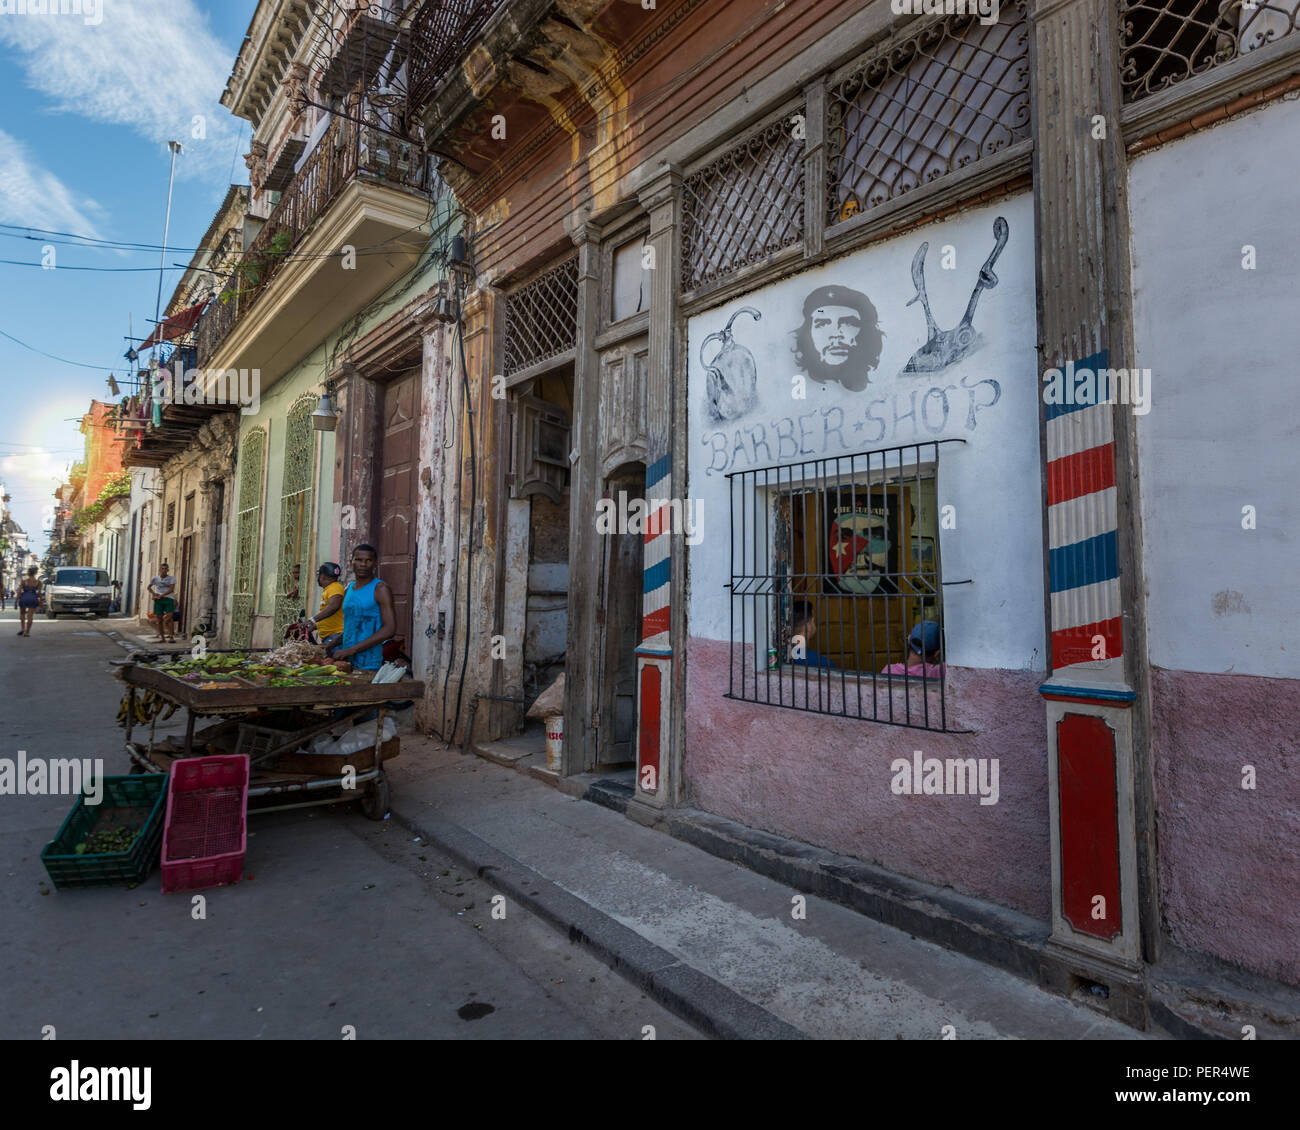 Photo de la rue de La Havane, Cuba. Ventes des agriculteurs de fruits dans Habana. Image de Che Guevara sur le mur, symbole de la révolution cubaine. Banque D'Images